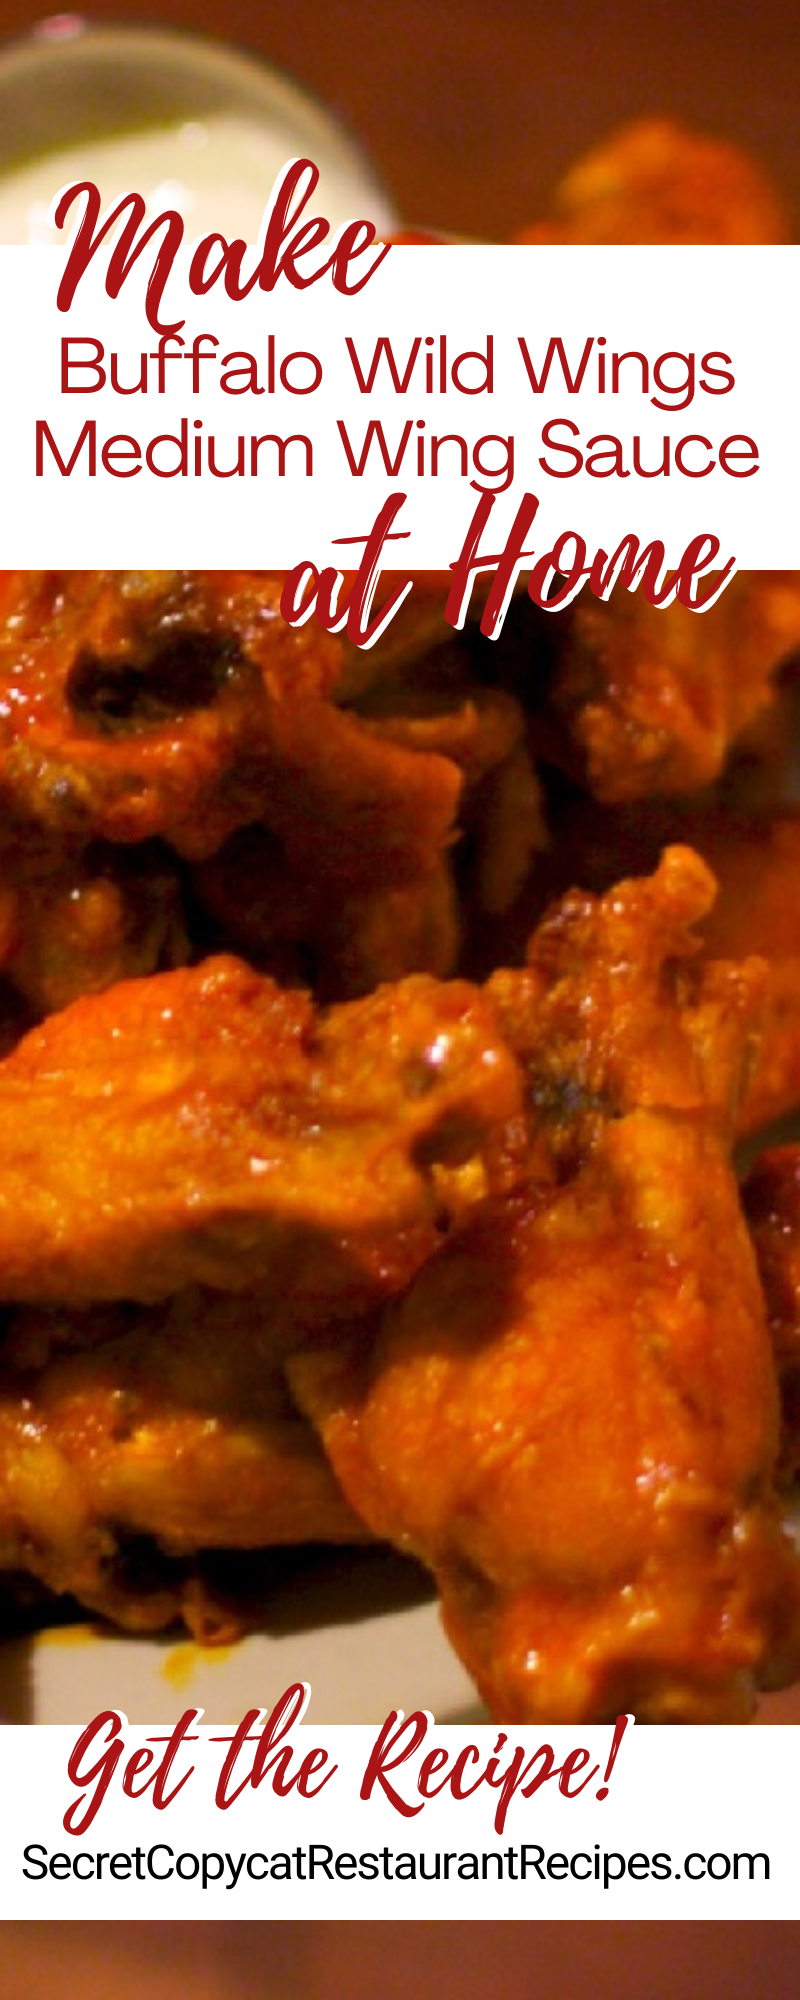 Buffalo Wild Wings Medium Wing Sauce Recipe